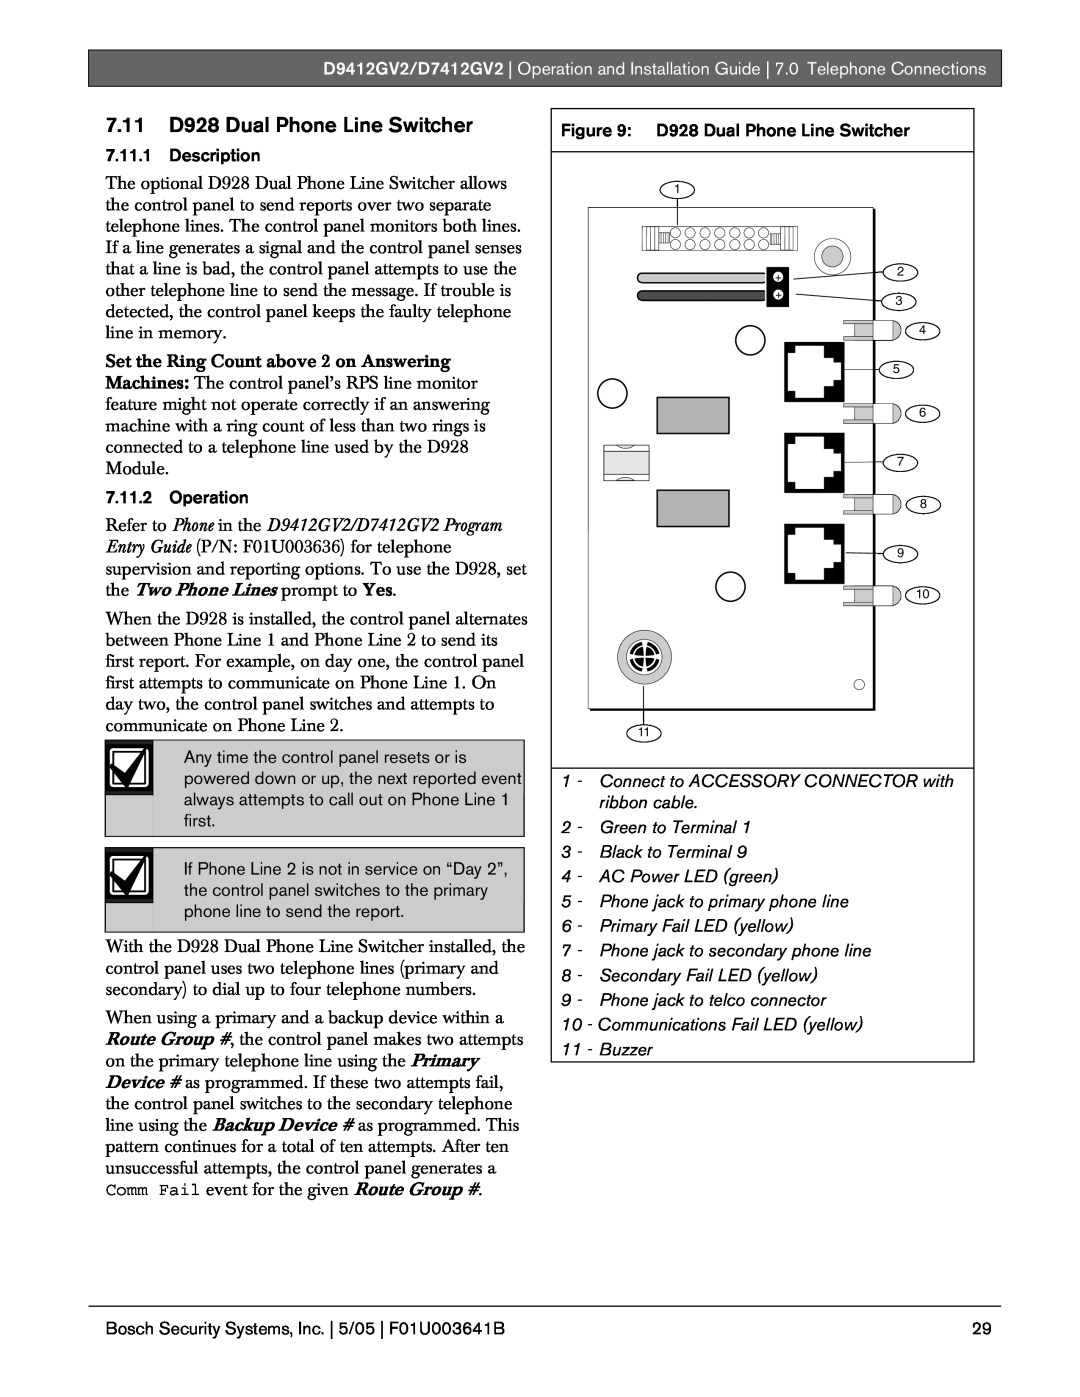 Bosch Appliances D9412GV2 manual 7.11D928 Dual Phone Line Switcher, Description, Operation 